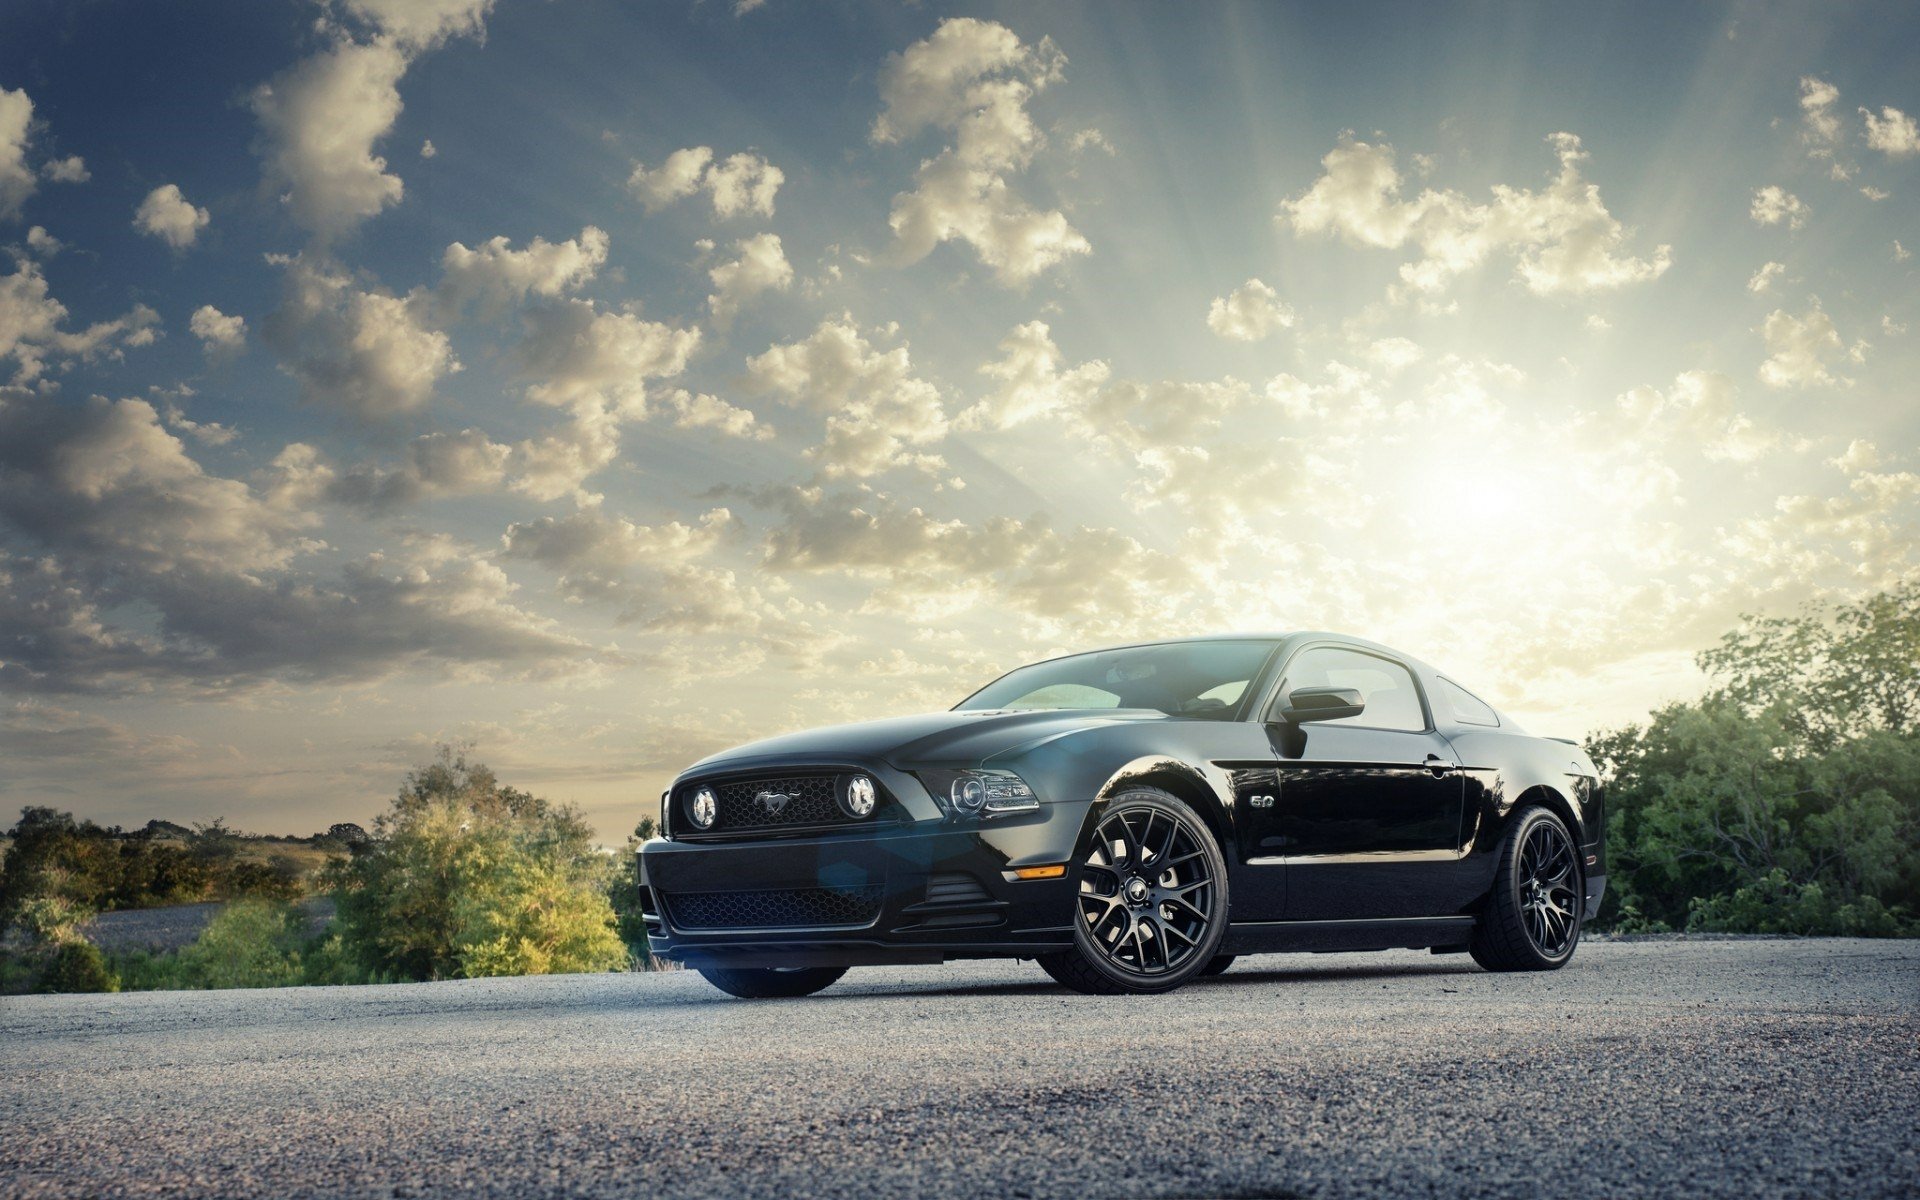 Ford Mustang là một trong những dòng xe đặc trưng của nền công nghiệp ô tô Mỹ. Với thiết kế cổ điển và phong cách đầy mạnh mẽ, chiếc xe này sẽ khiến bạn say mê ngay từ cái nhìn đầu tiên.